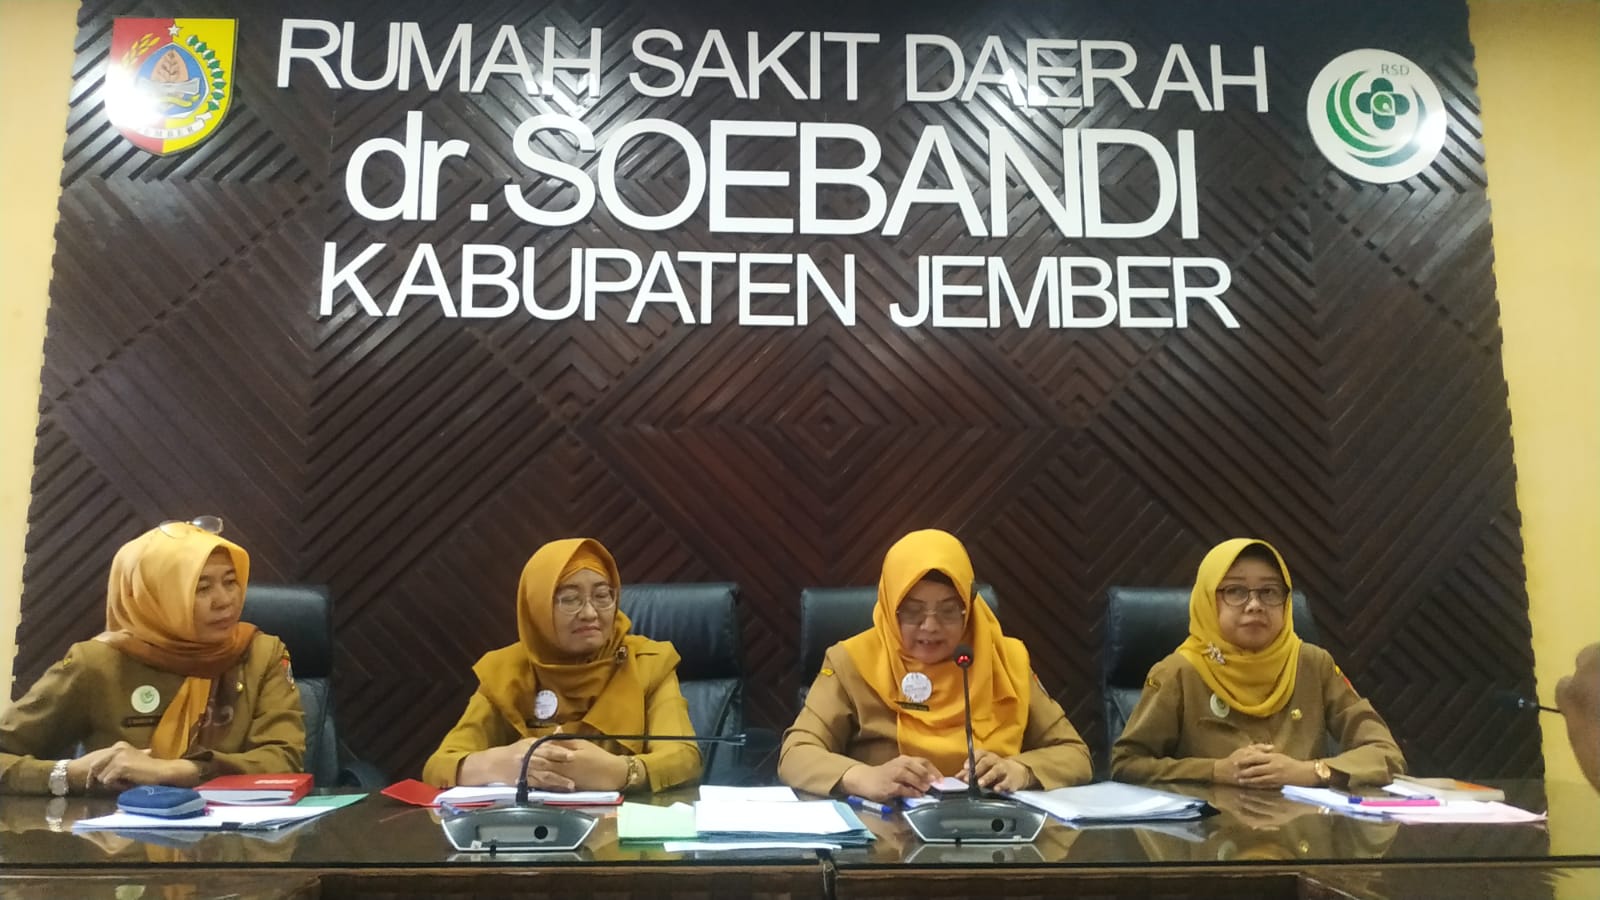 RSD dr Soebandi Rawat 5 Petugas KPPS dan Saksi Pemilu 2024